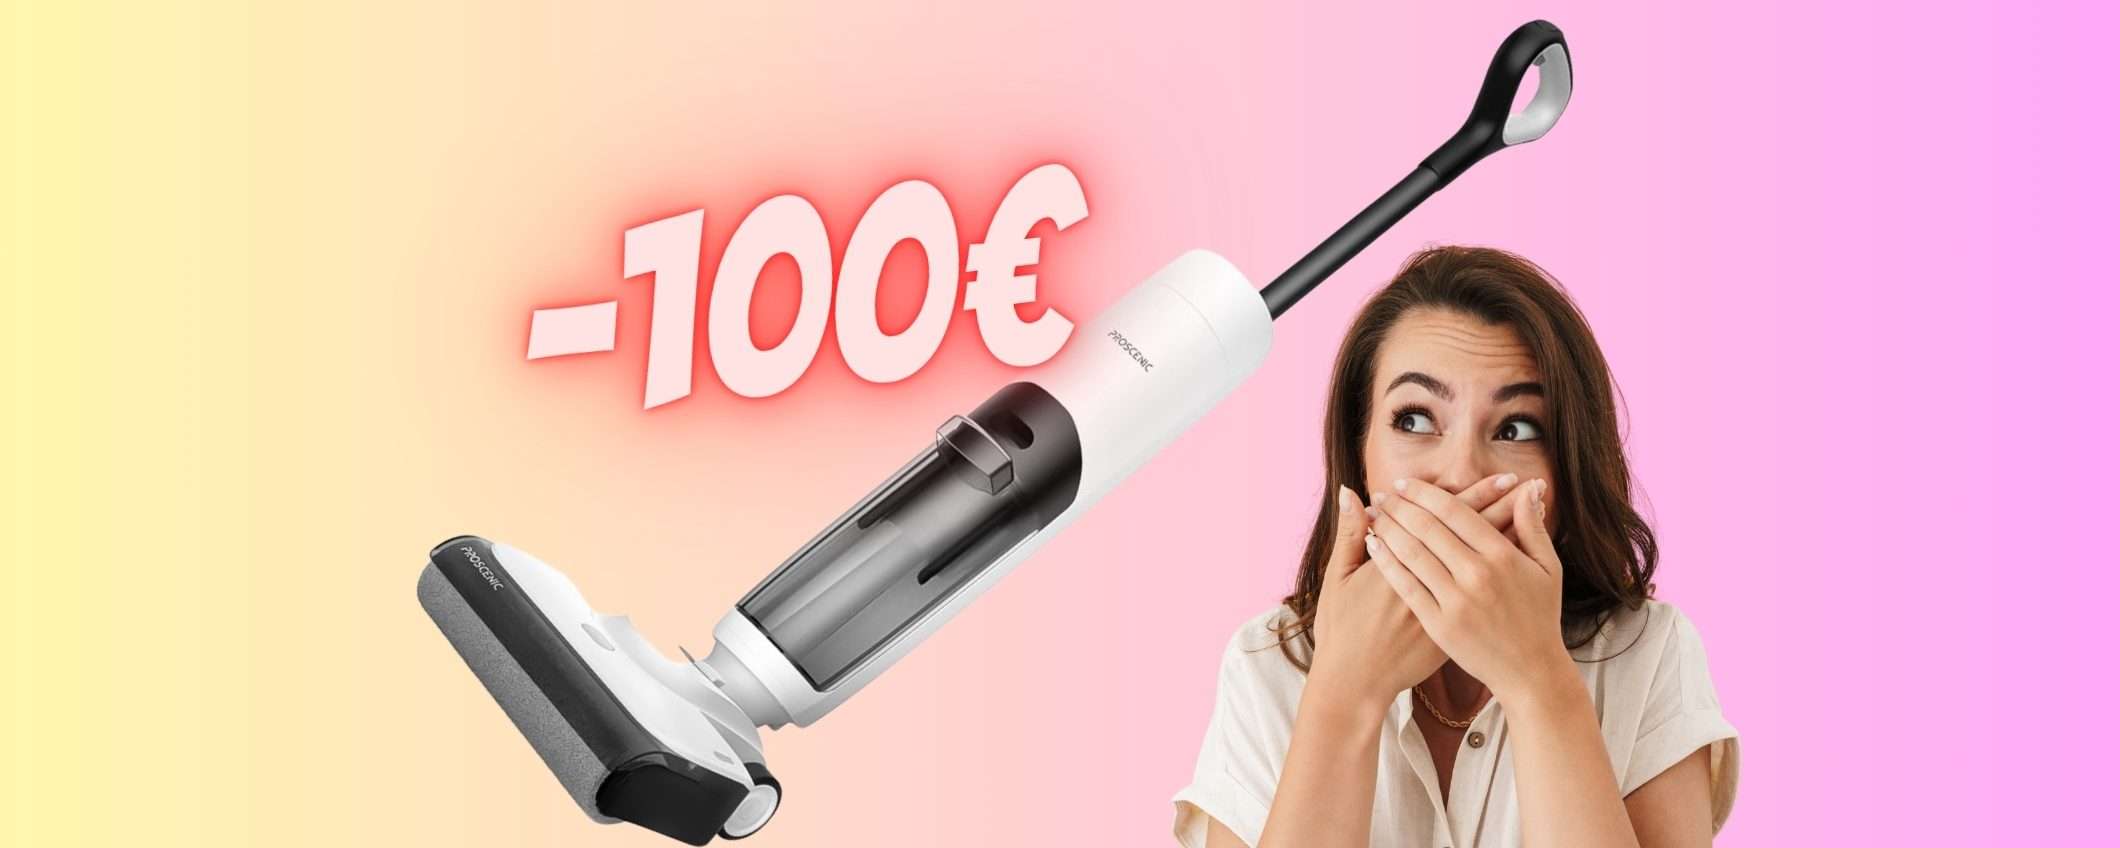 Proscenic F10: aspirapolvere e lavapavimenti senza fili a 100€ in MENO